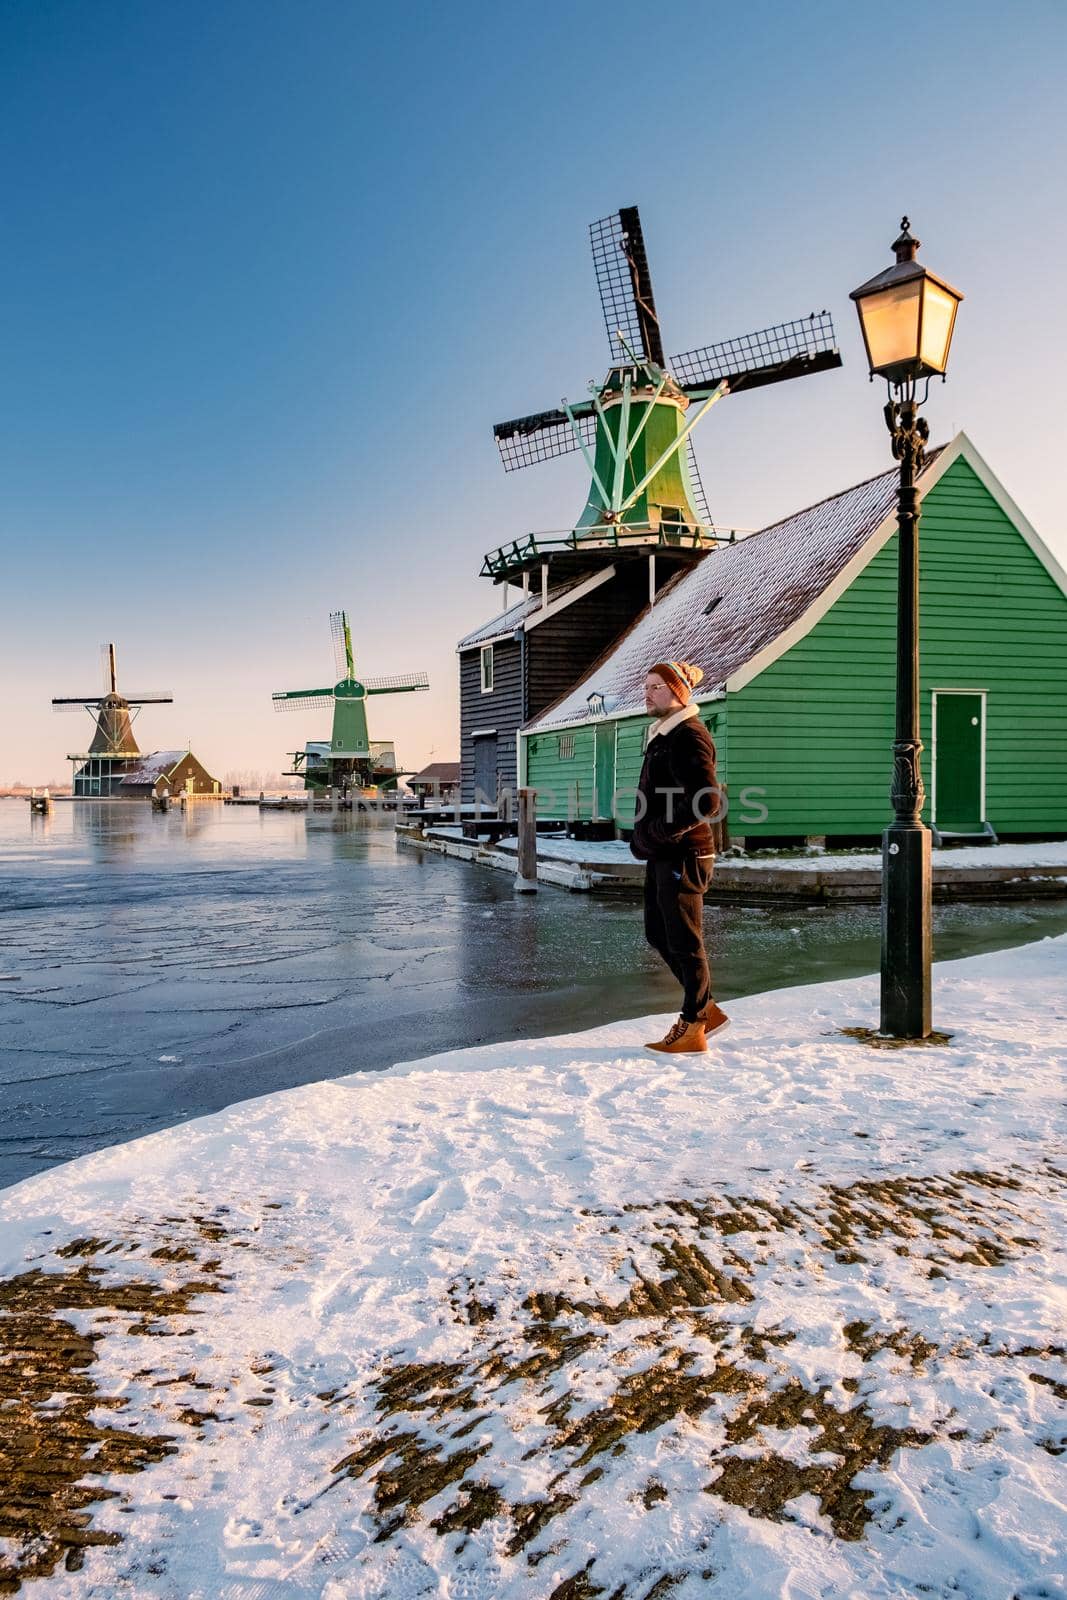 snow covered windmill village in the Zaanse Schans Netherlands, historical wooden windmills in winter Zaanse Schans Holland by fokkebok